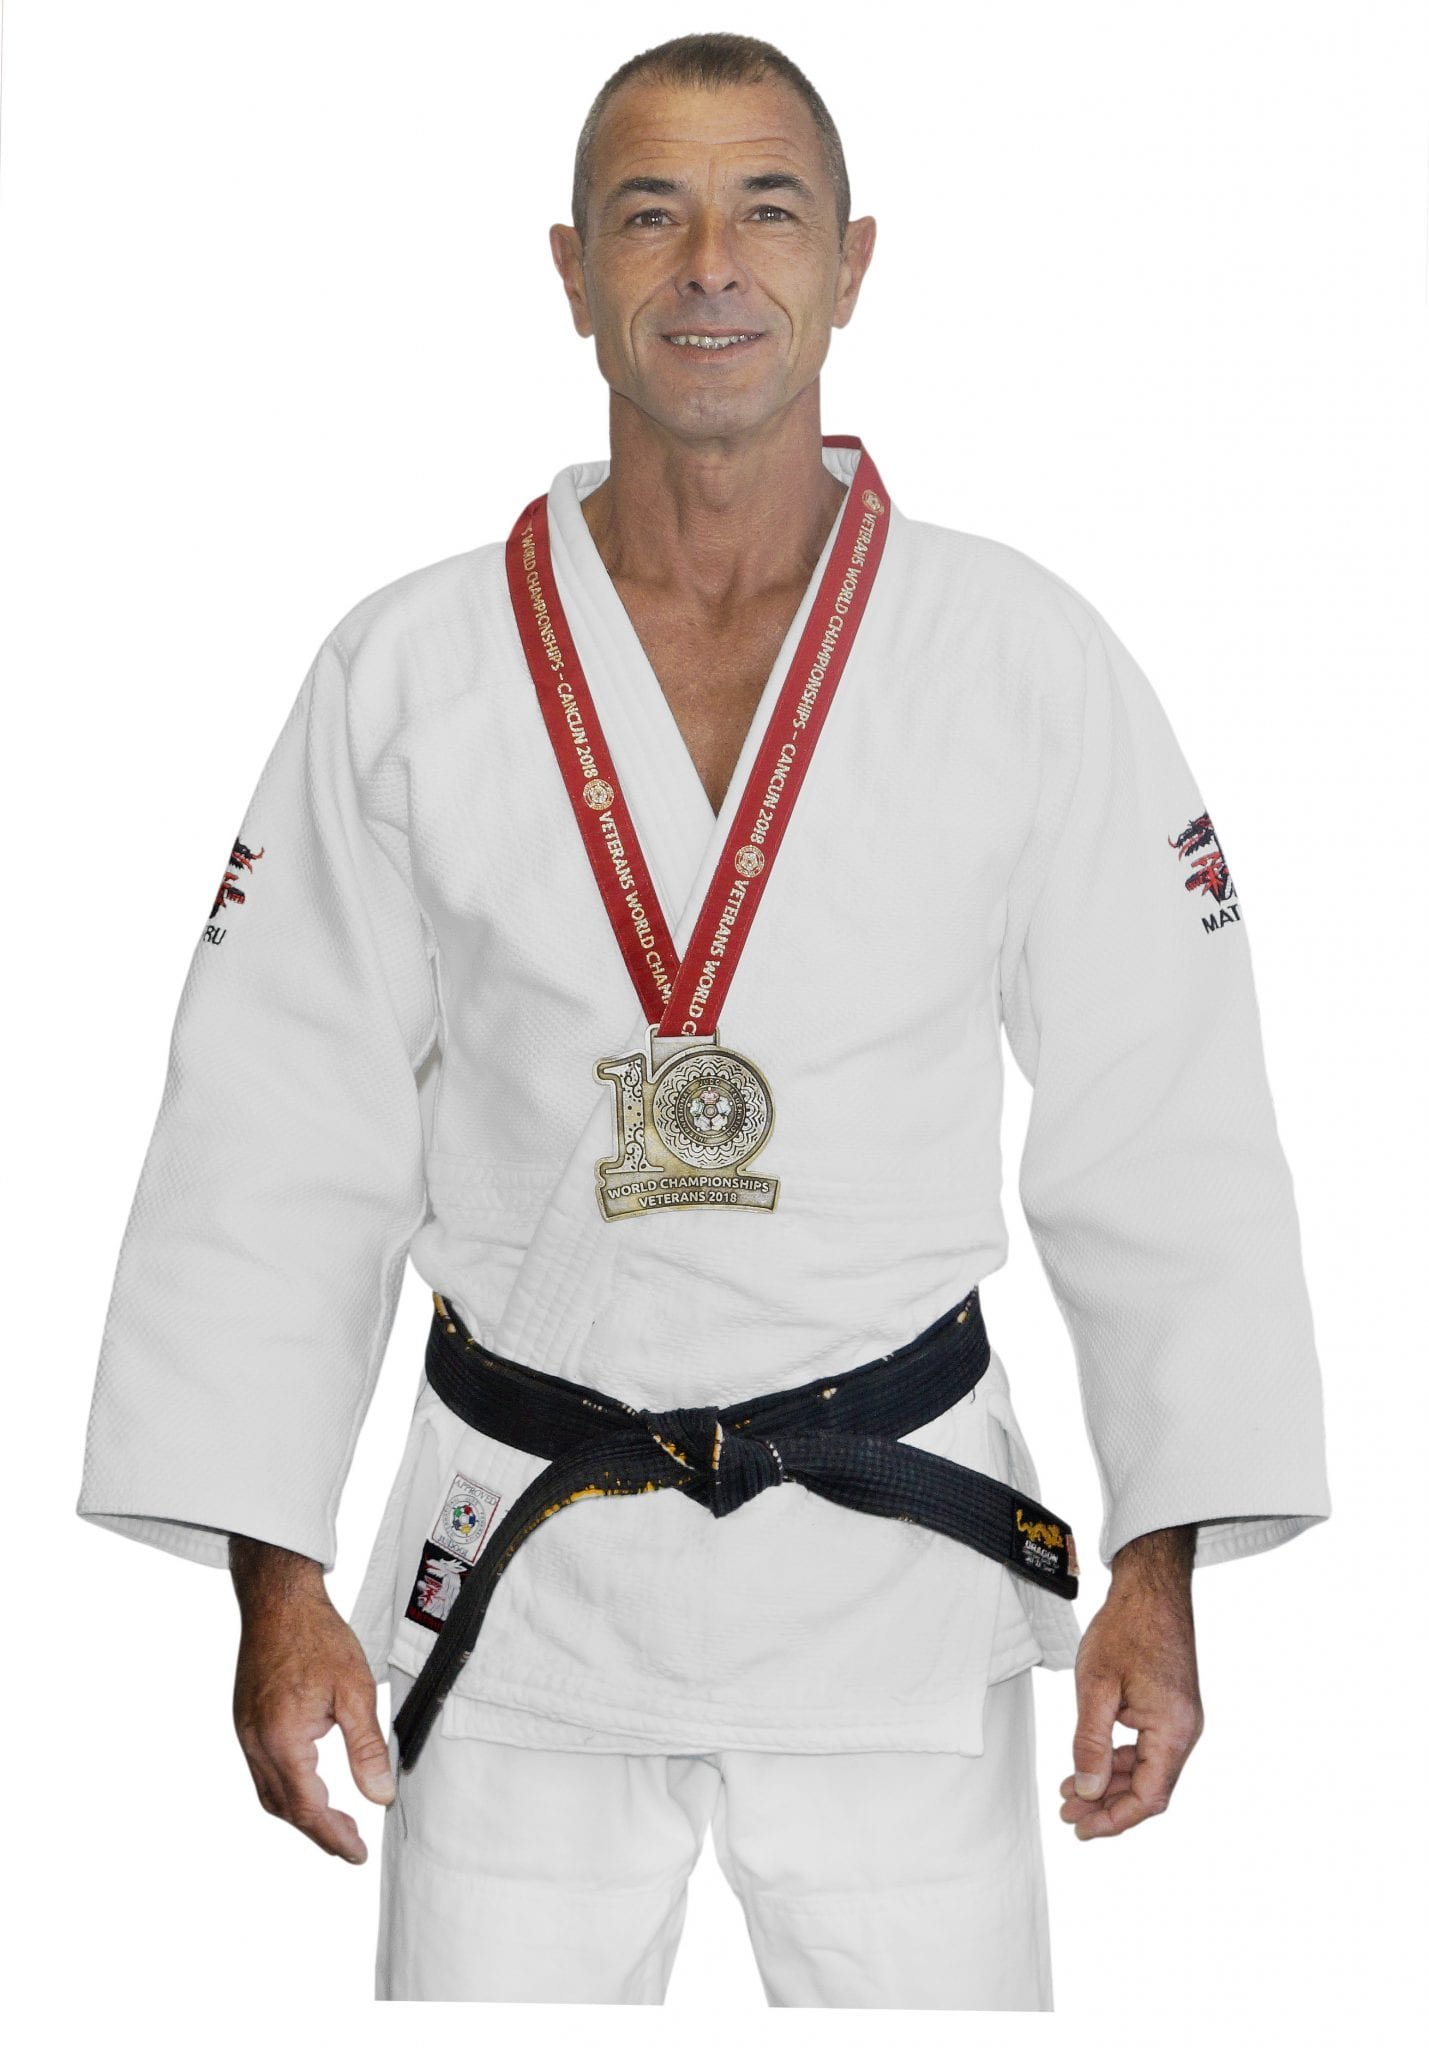 João_Neves_judoca (6)